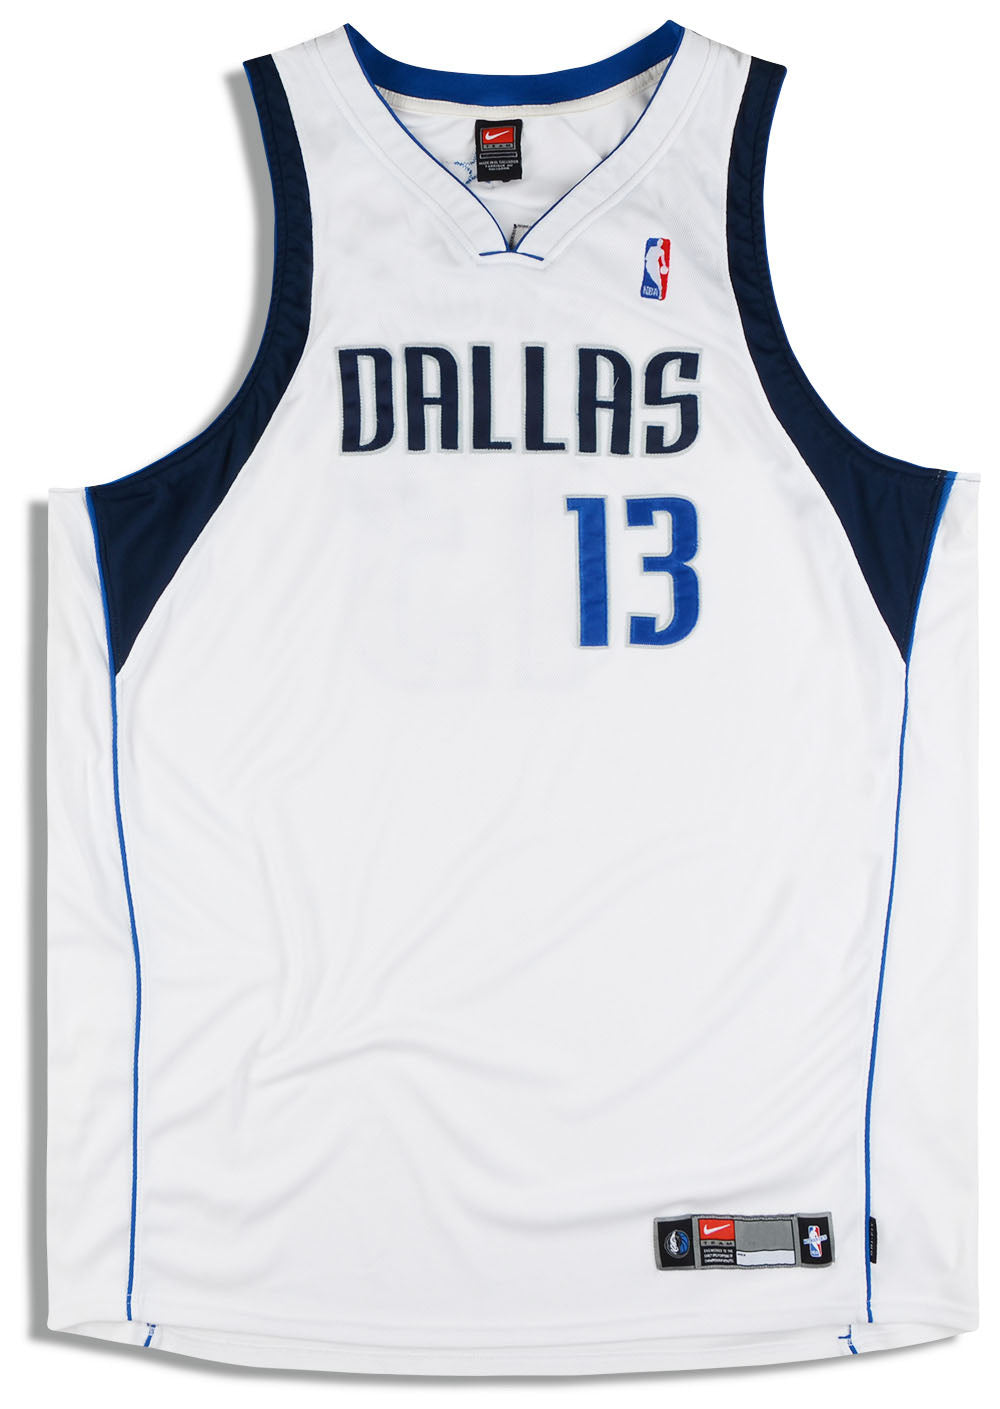 Official Dallas Mavericks Gear, Mavericks Jerseys, Mavericks Shop, Apparel